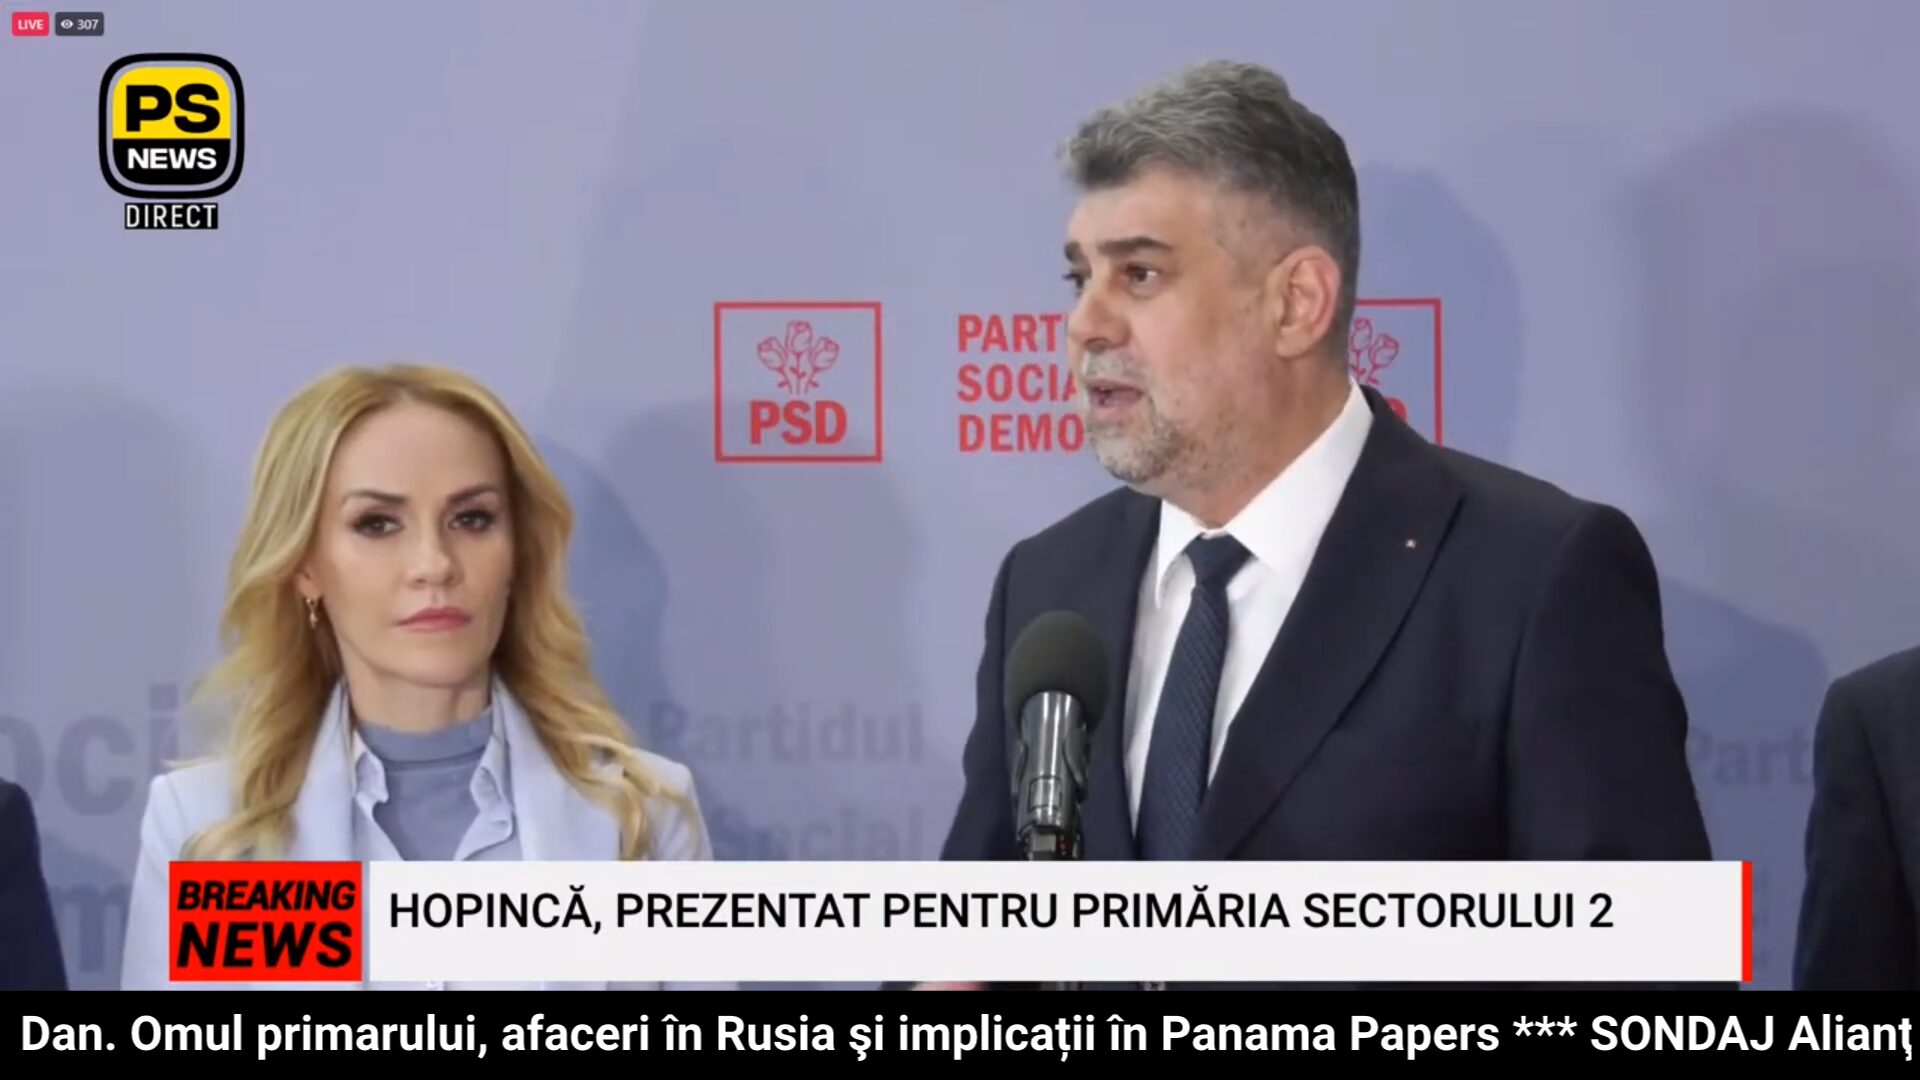 PS News TV | Rareș Hopincă își lansează candidatura la sectorul 2